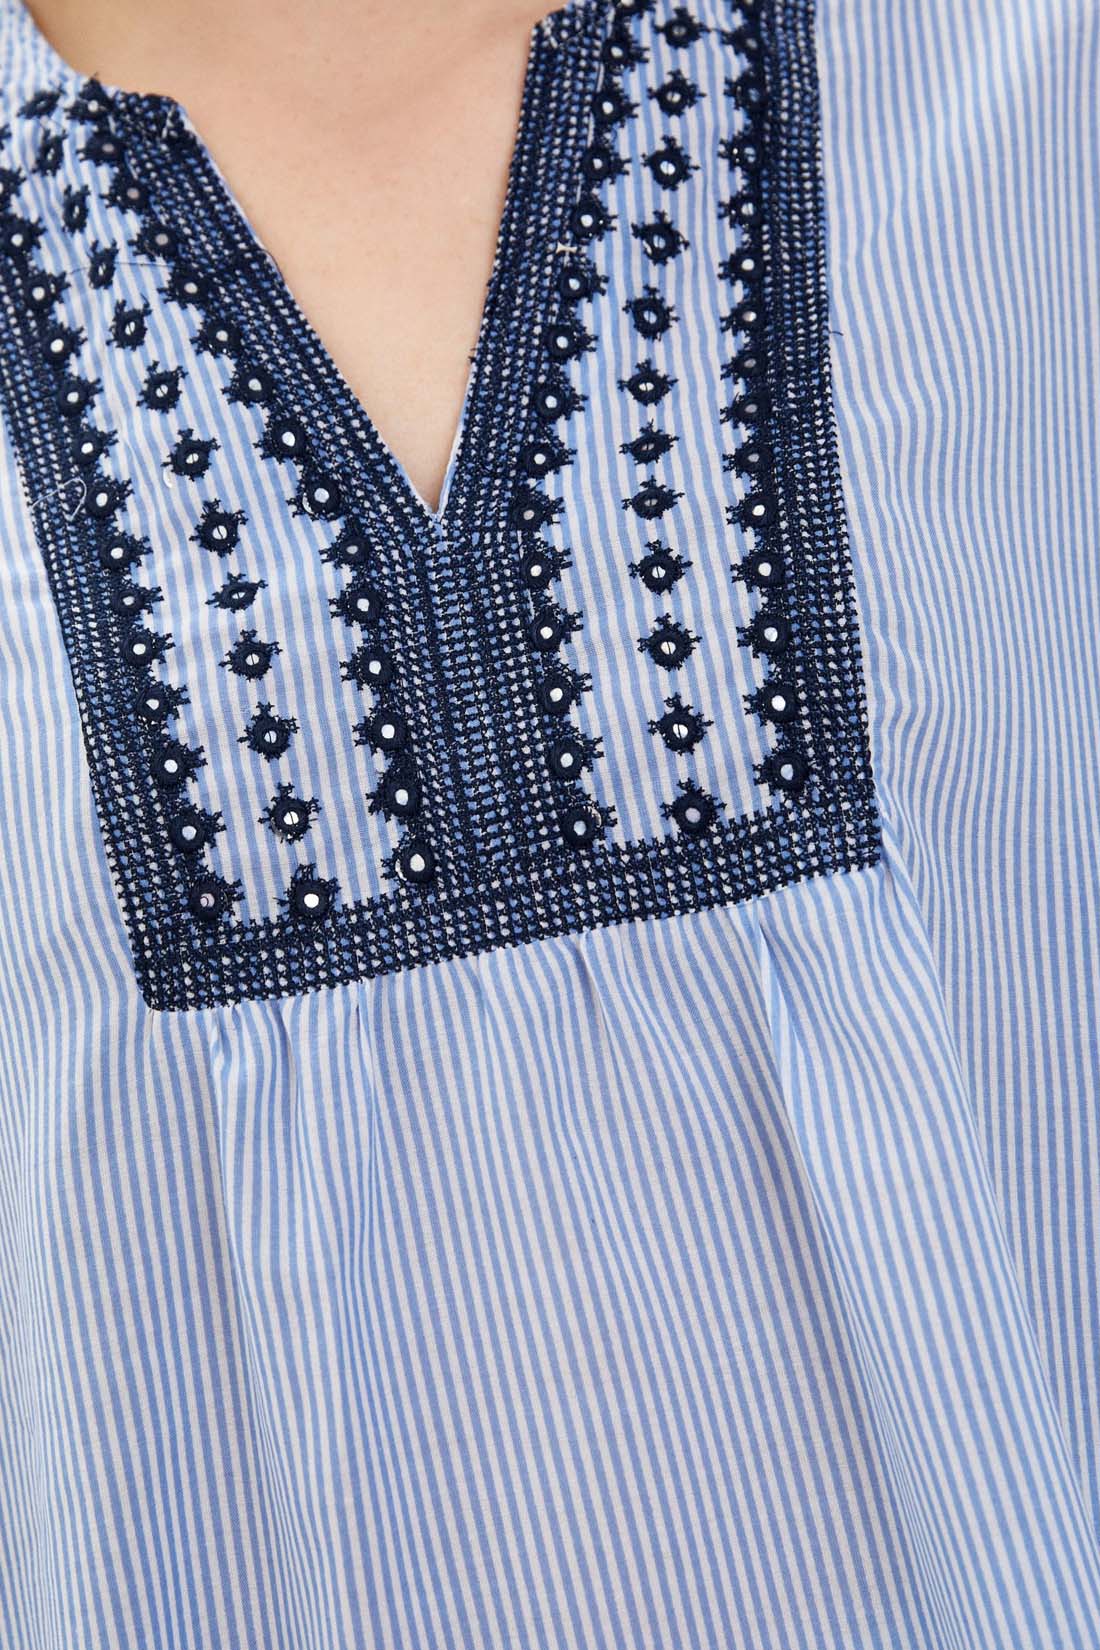 Блузка в этно-стиле (арт. baon B179031), размер L, цвет angel blue striped#голубой Блузка в этно-стиле (арт. baon B179031) - фото 3